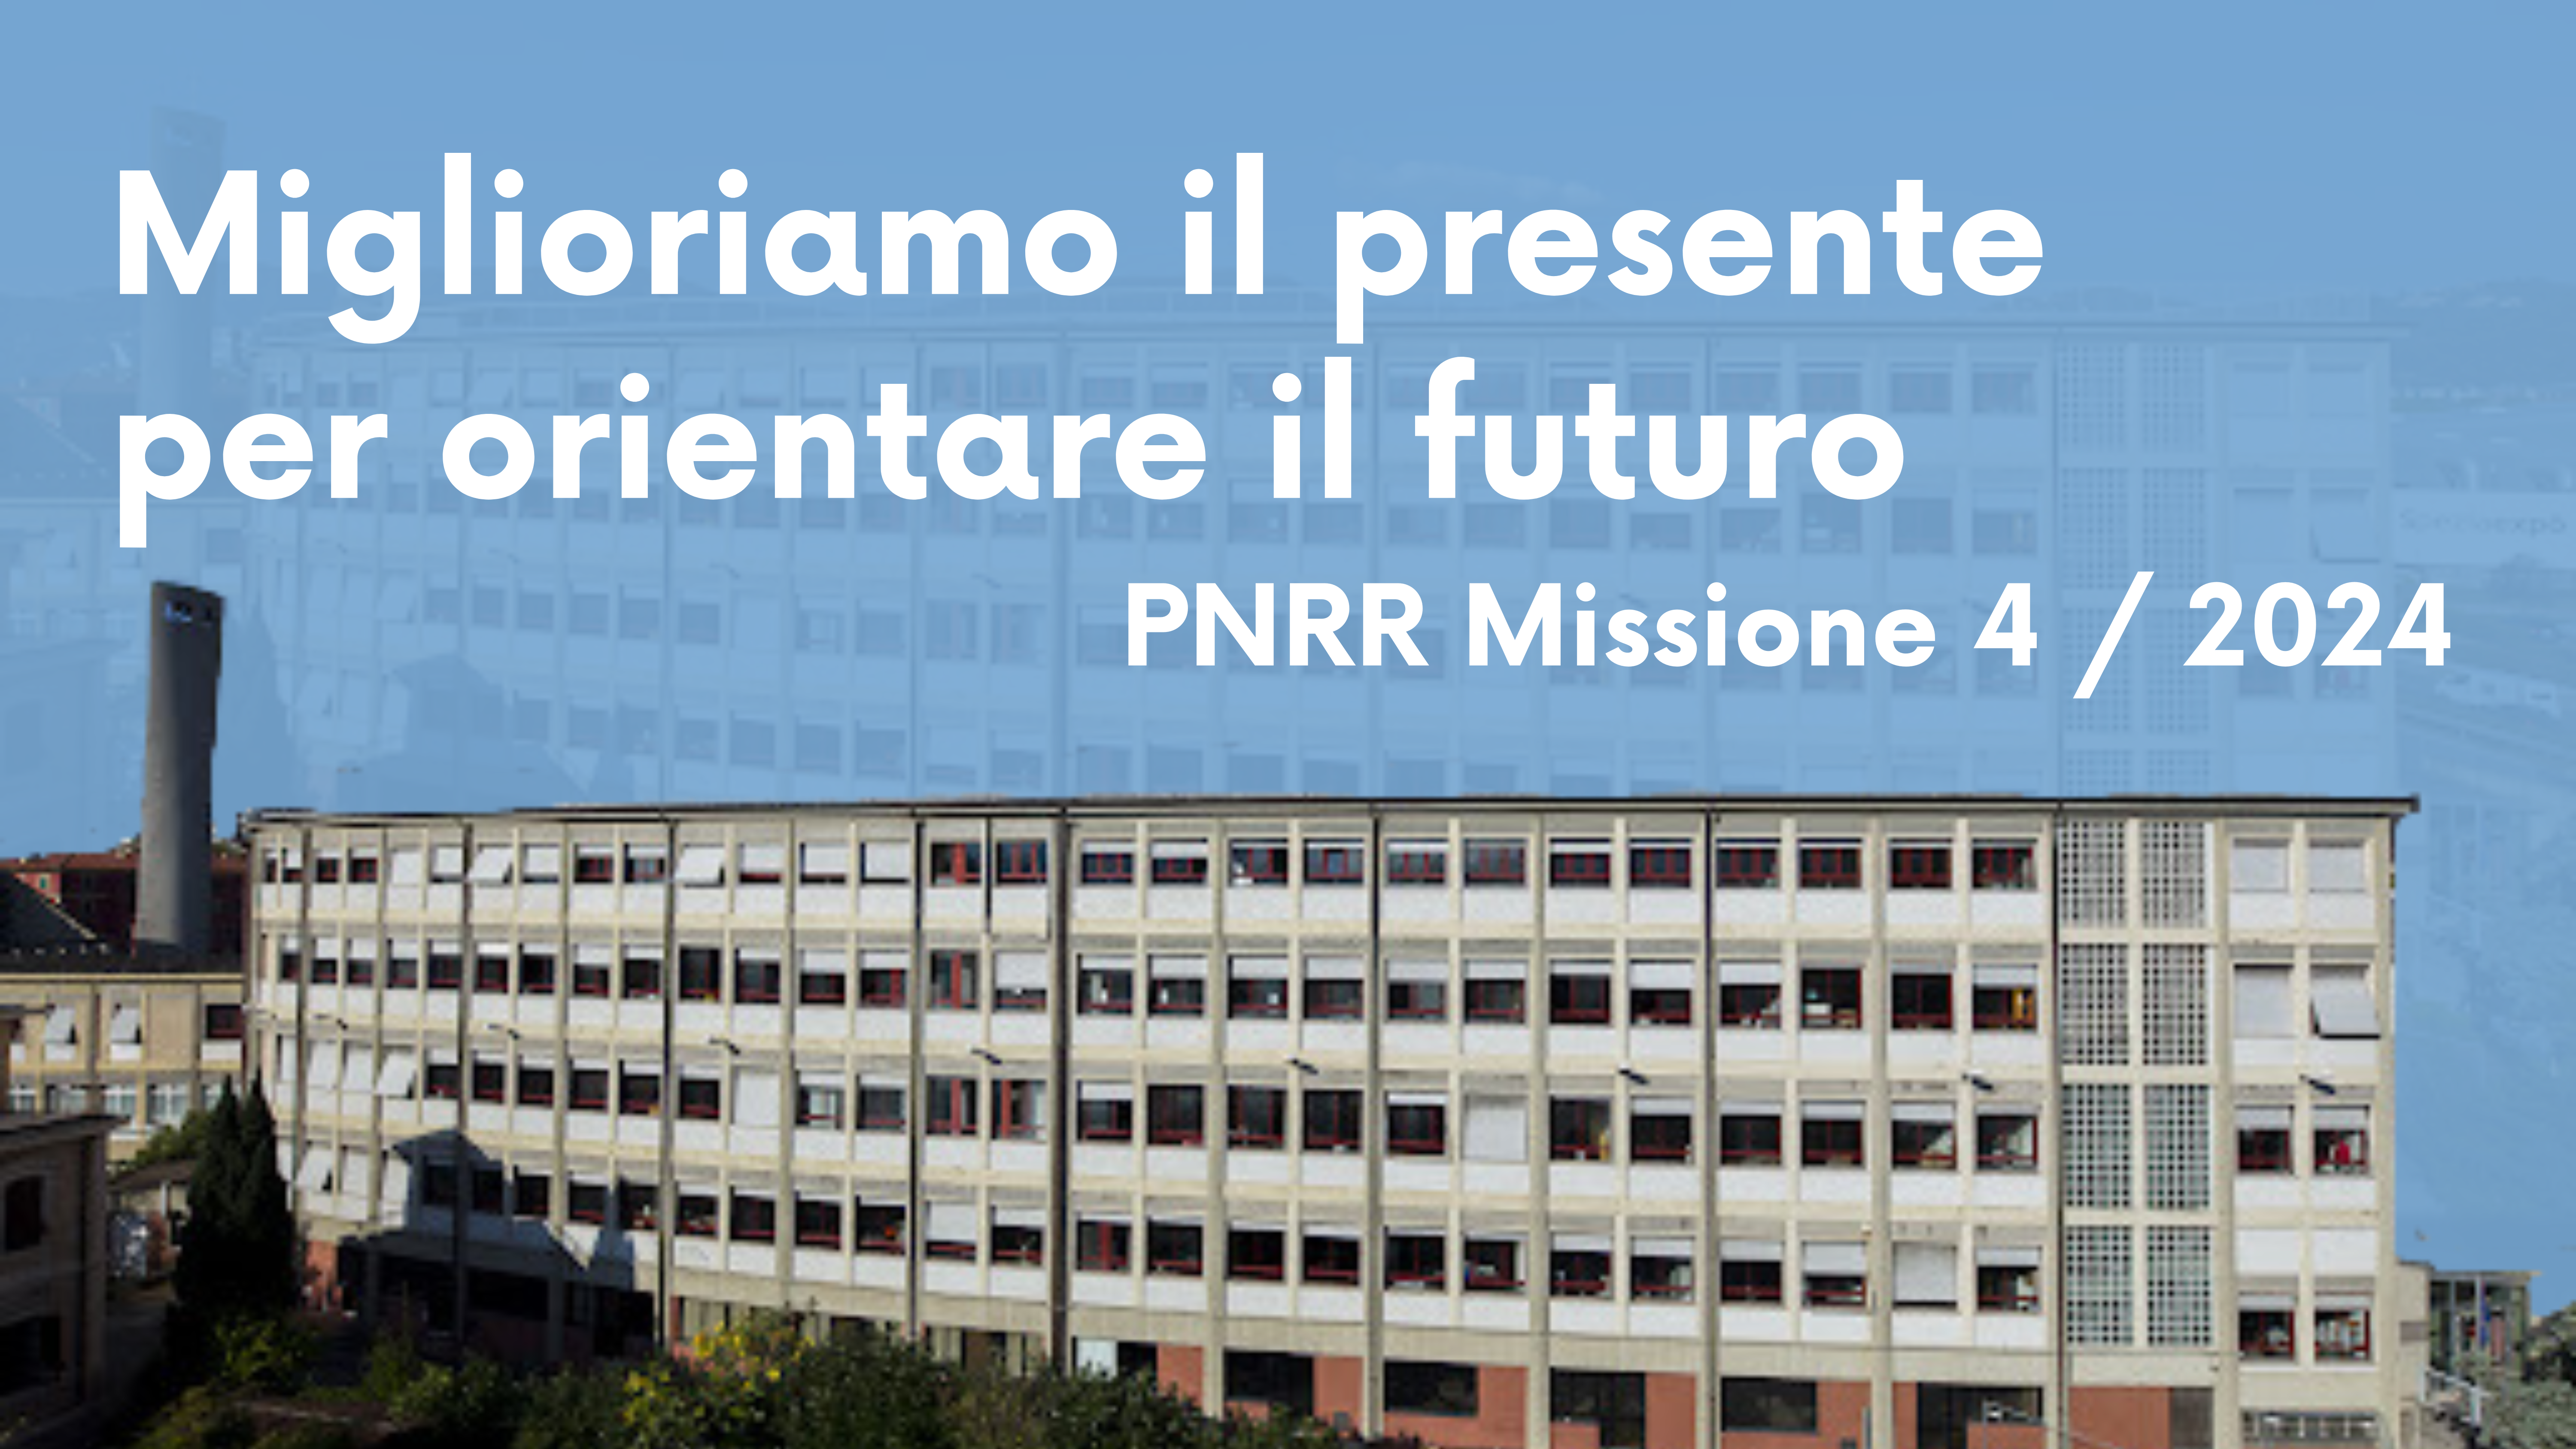 Miglioriamo il presente per orientare il futuro - PNRR Missione 4